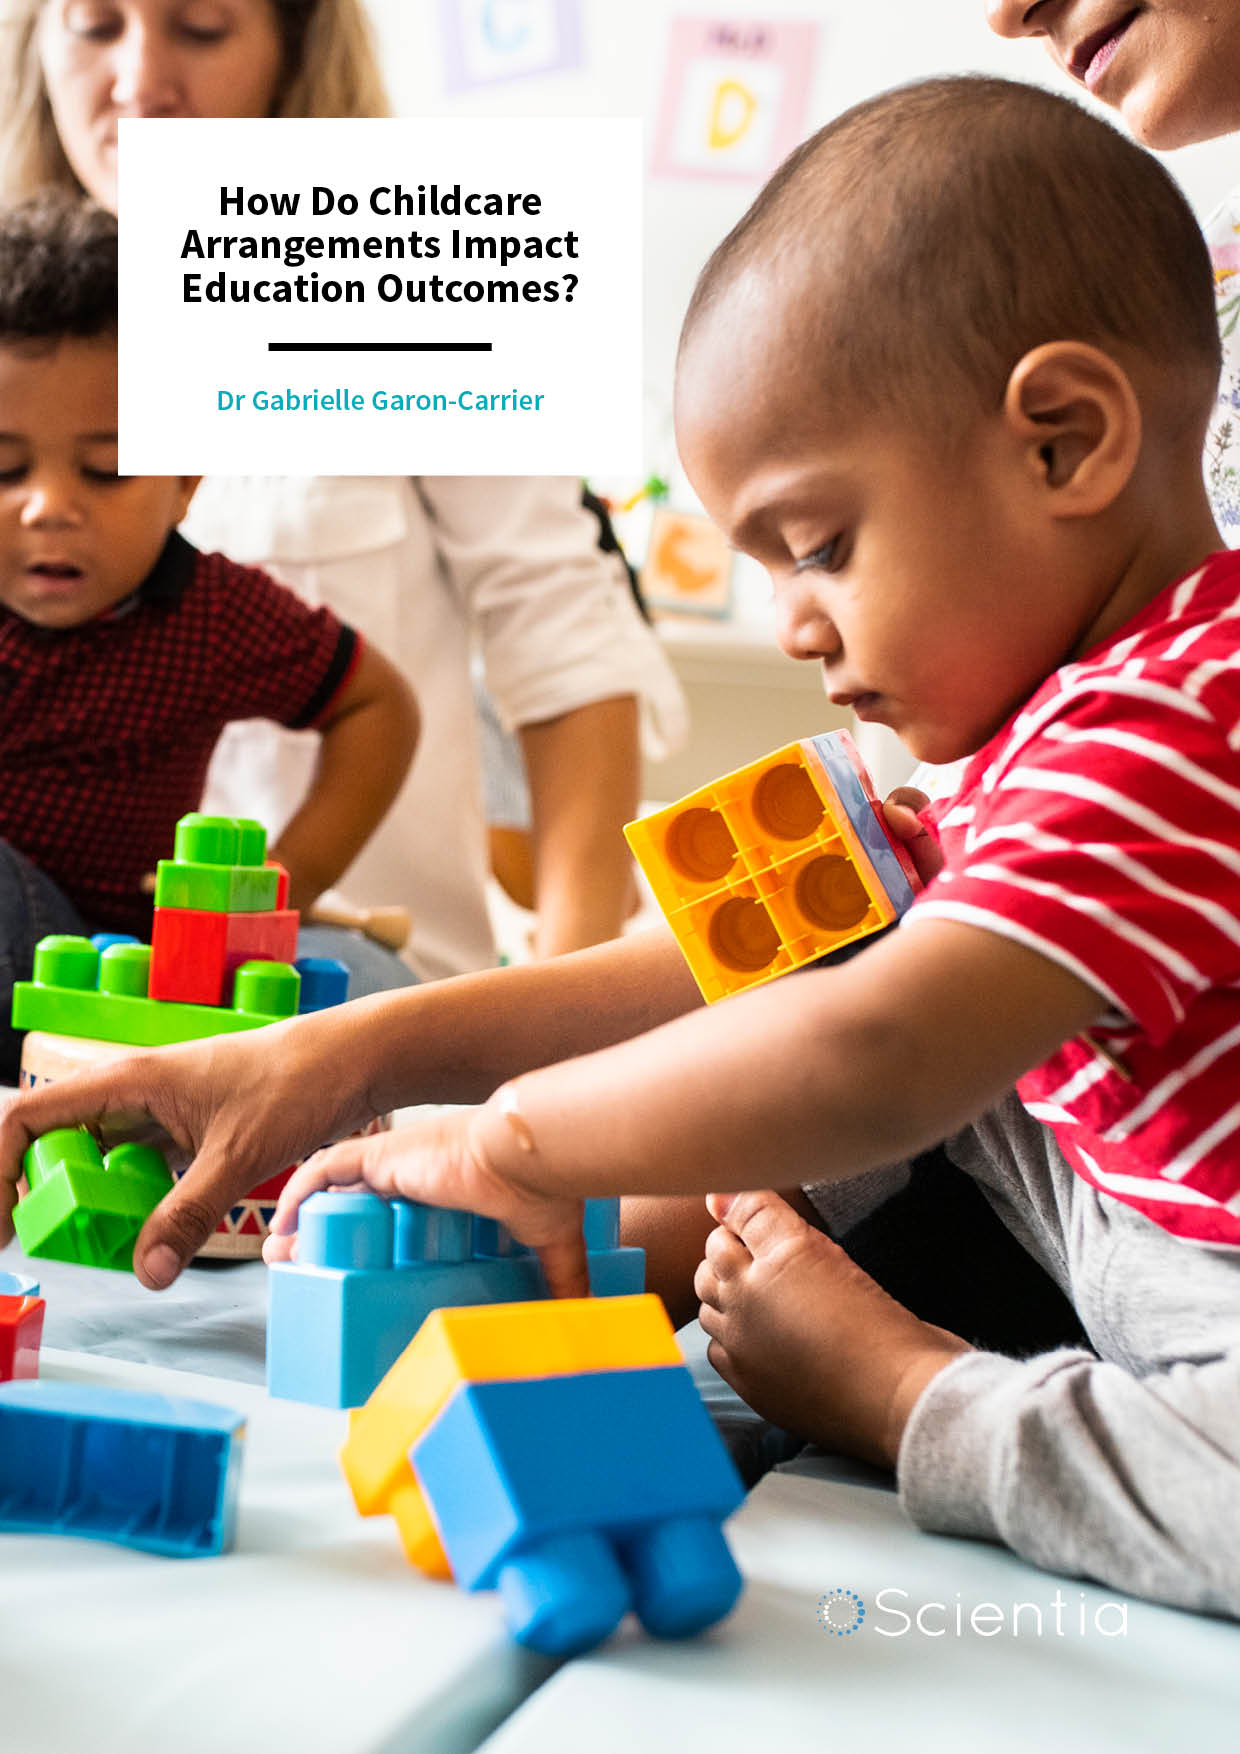 Dr Gabrielle Garon-Carrier | How Do Childcare Arrangements Impact Education Outcomes?